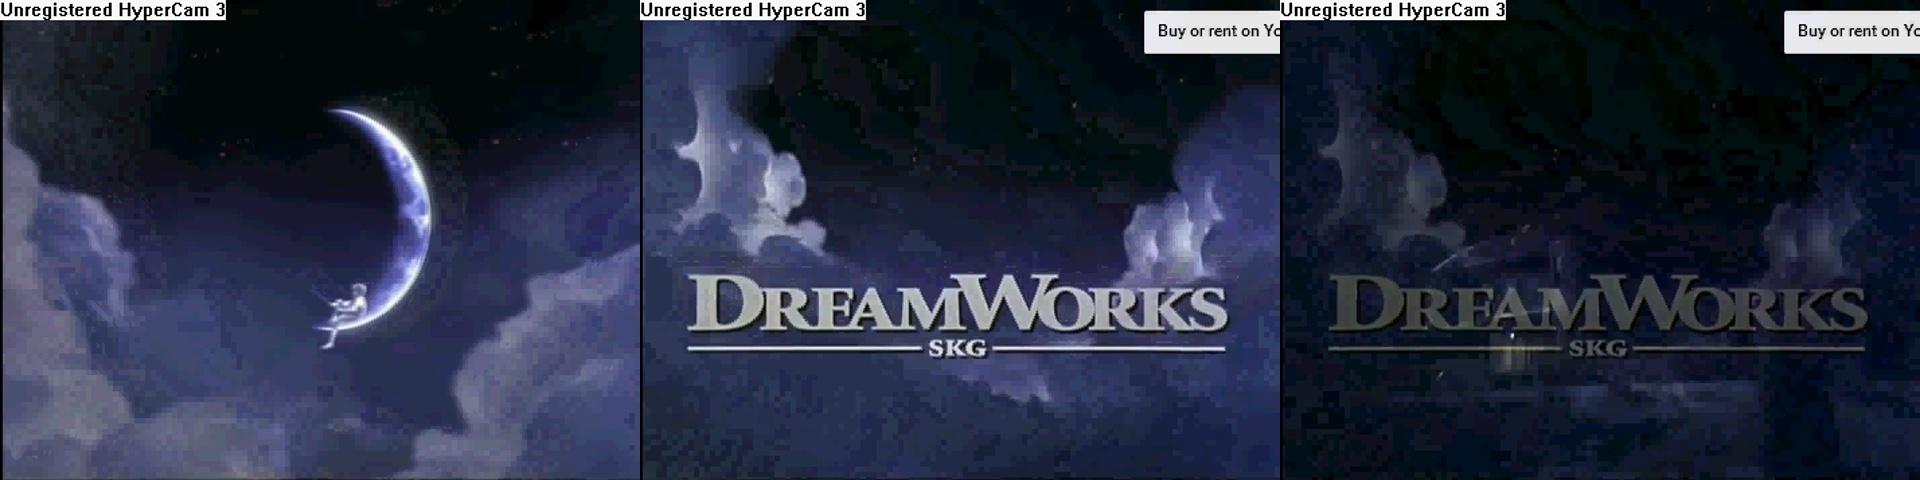 DreamWorks SKG Logo - Image - Dreamworks skg logo rare trailer variant.jpg | Logopedia ...